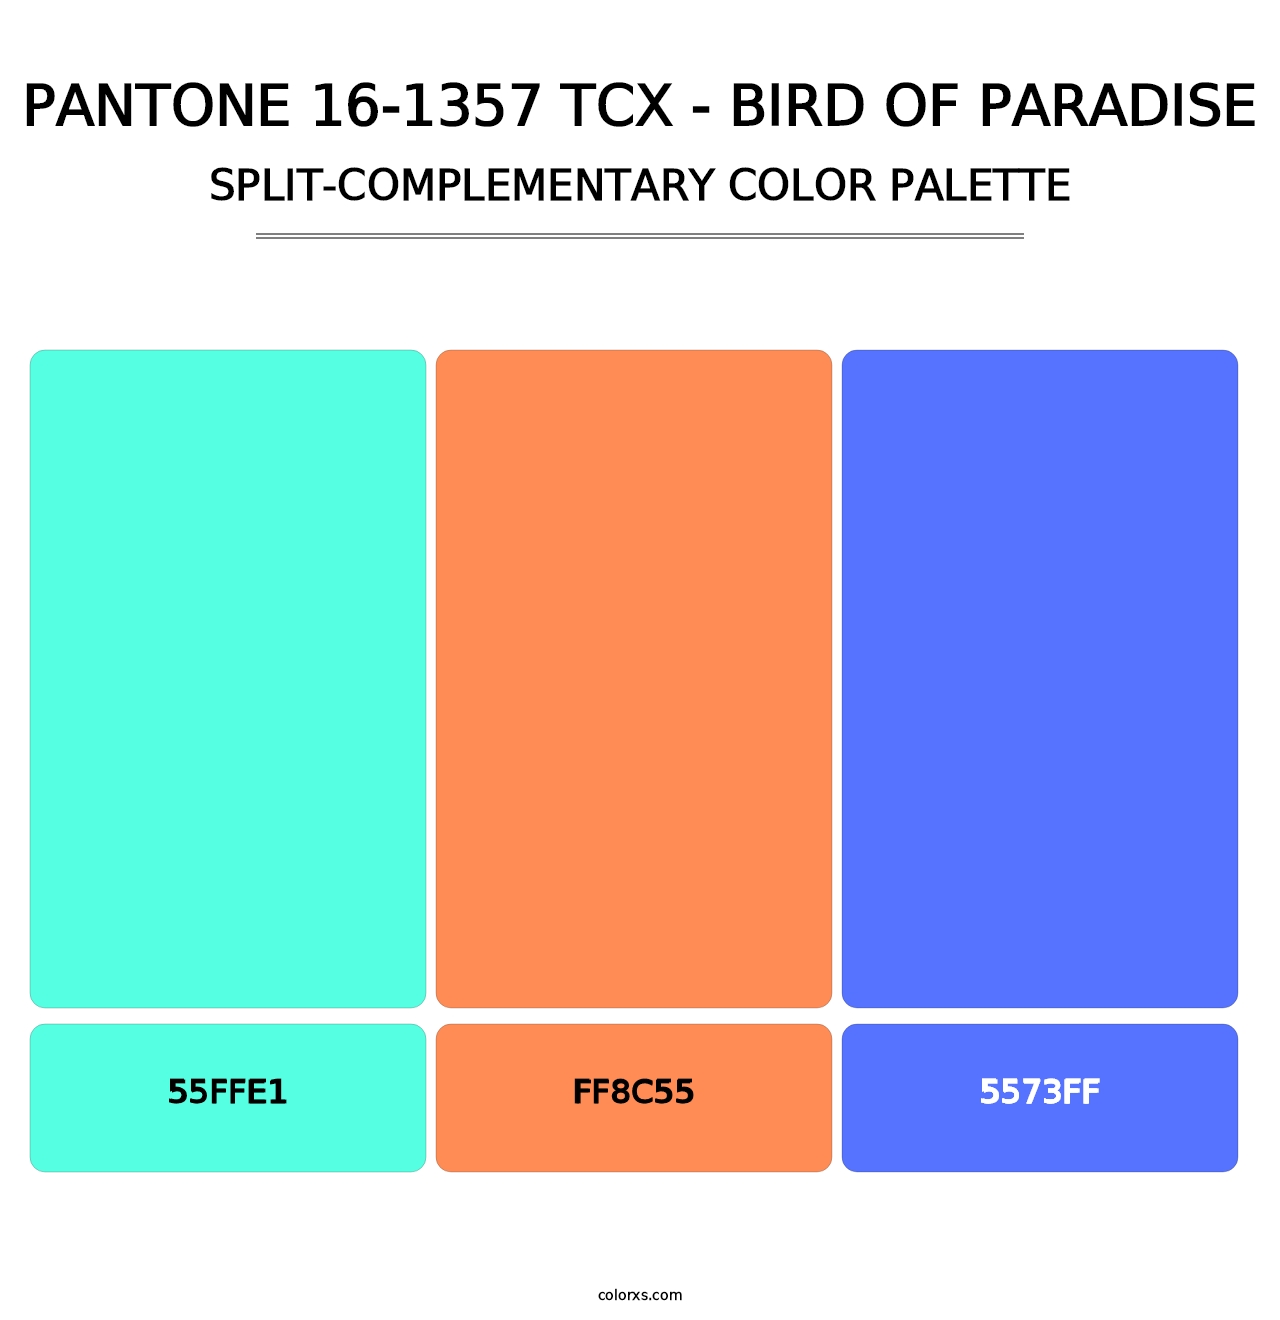 PANTONE 16-1357 TCX - Bird of Paradise - Split-Complementary Color Palette